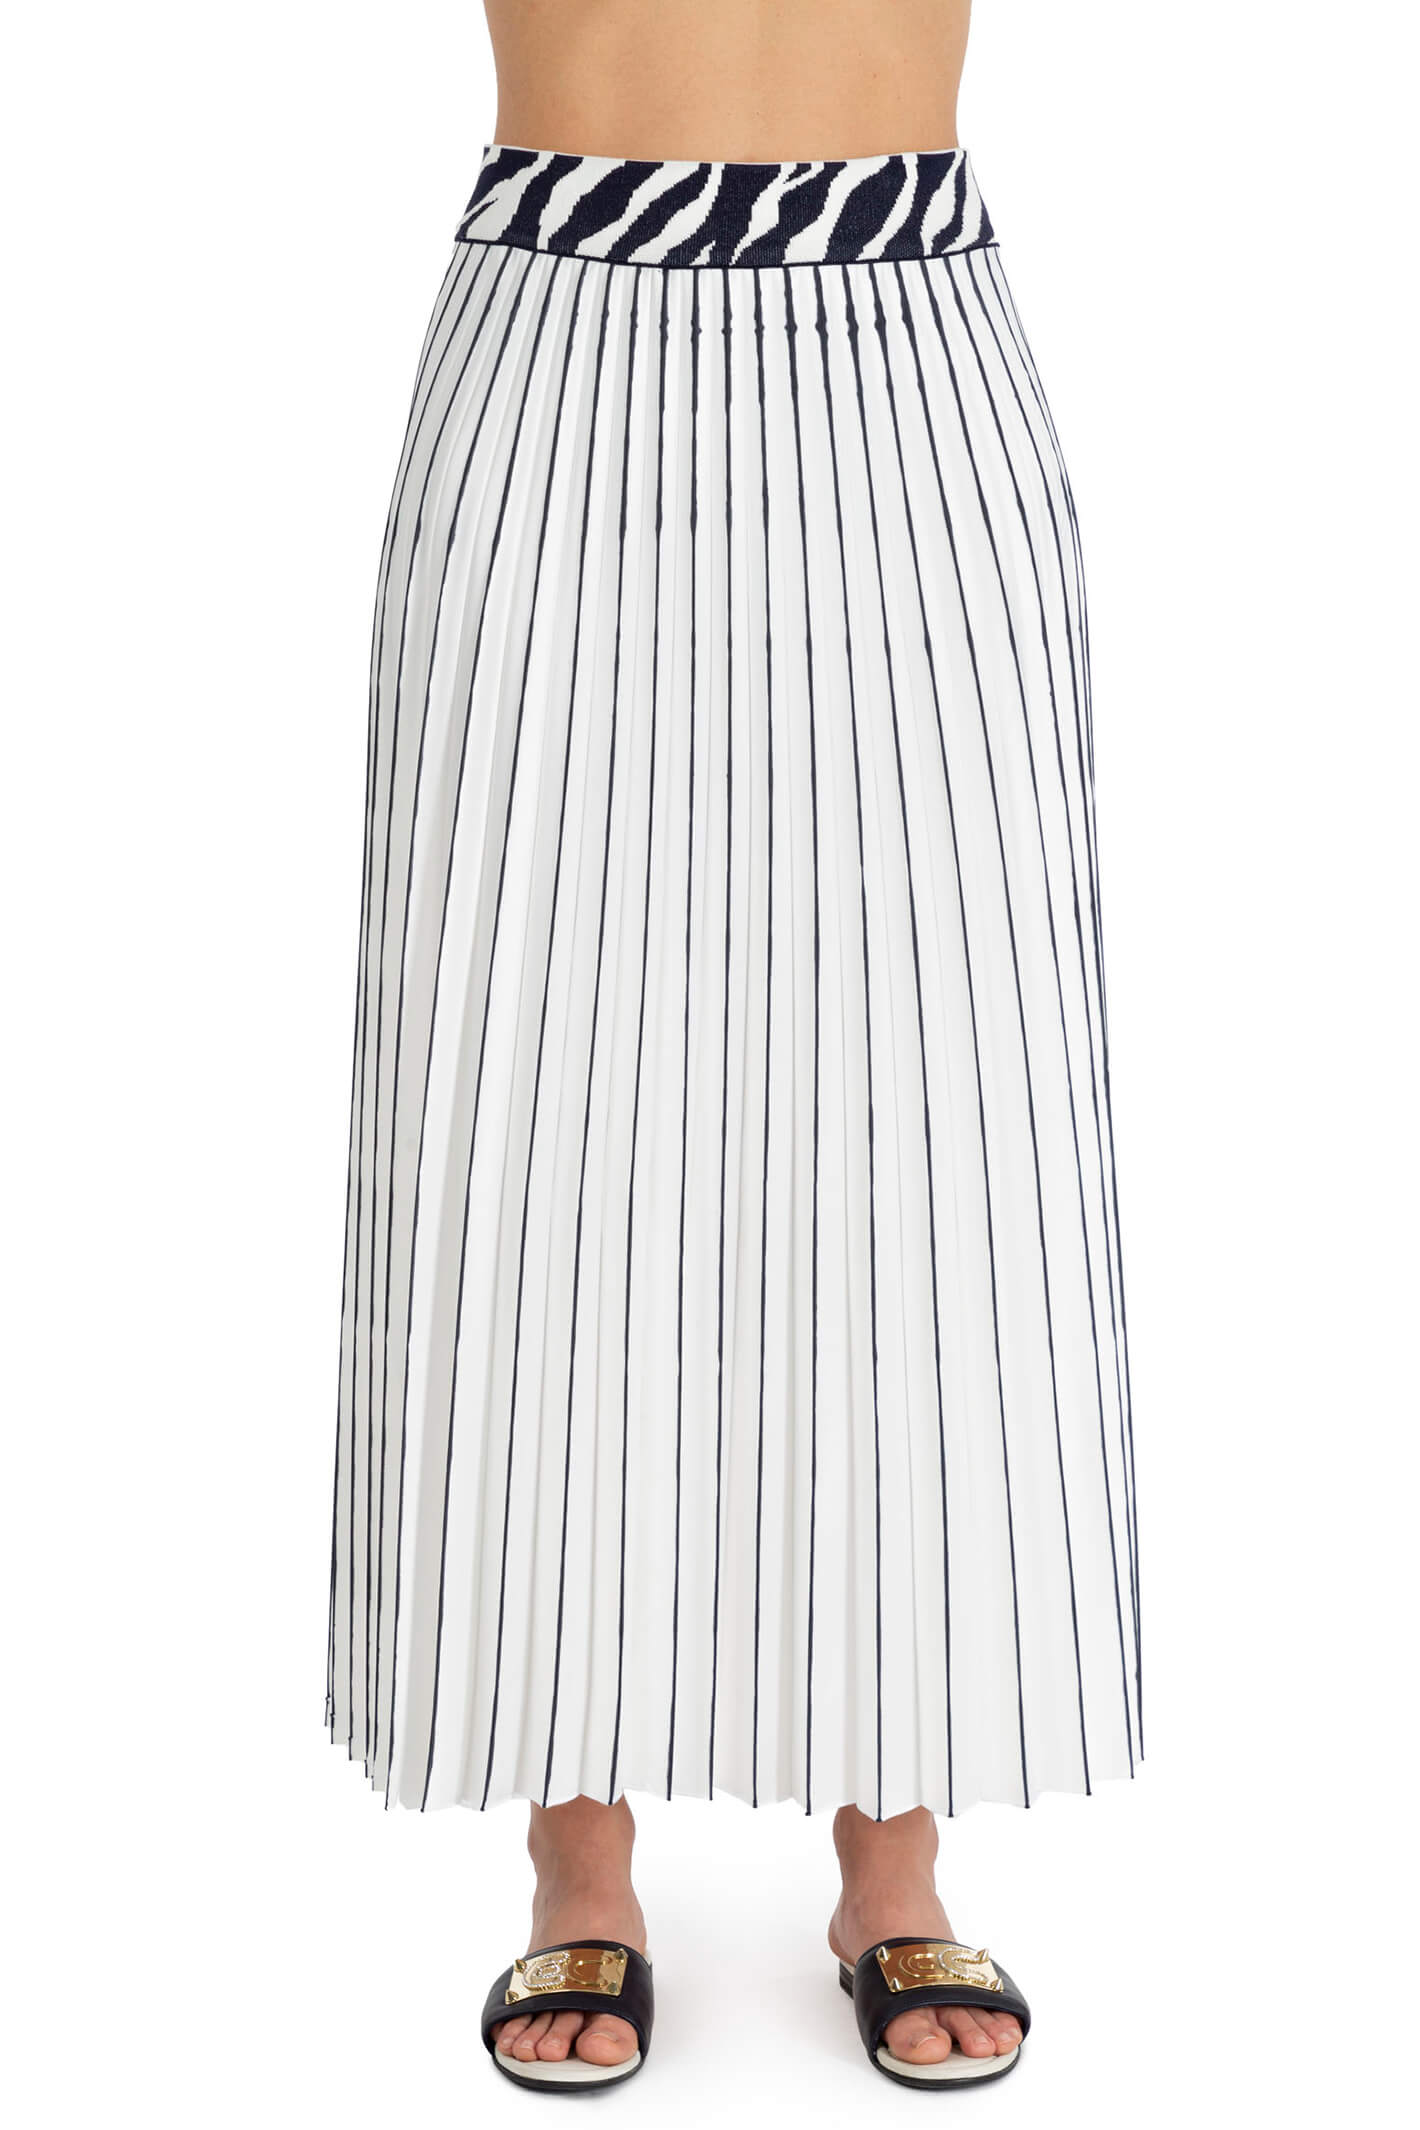 Elisa Cavaletti ELP233020803 White Navy Pleated Skirt – Experience